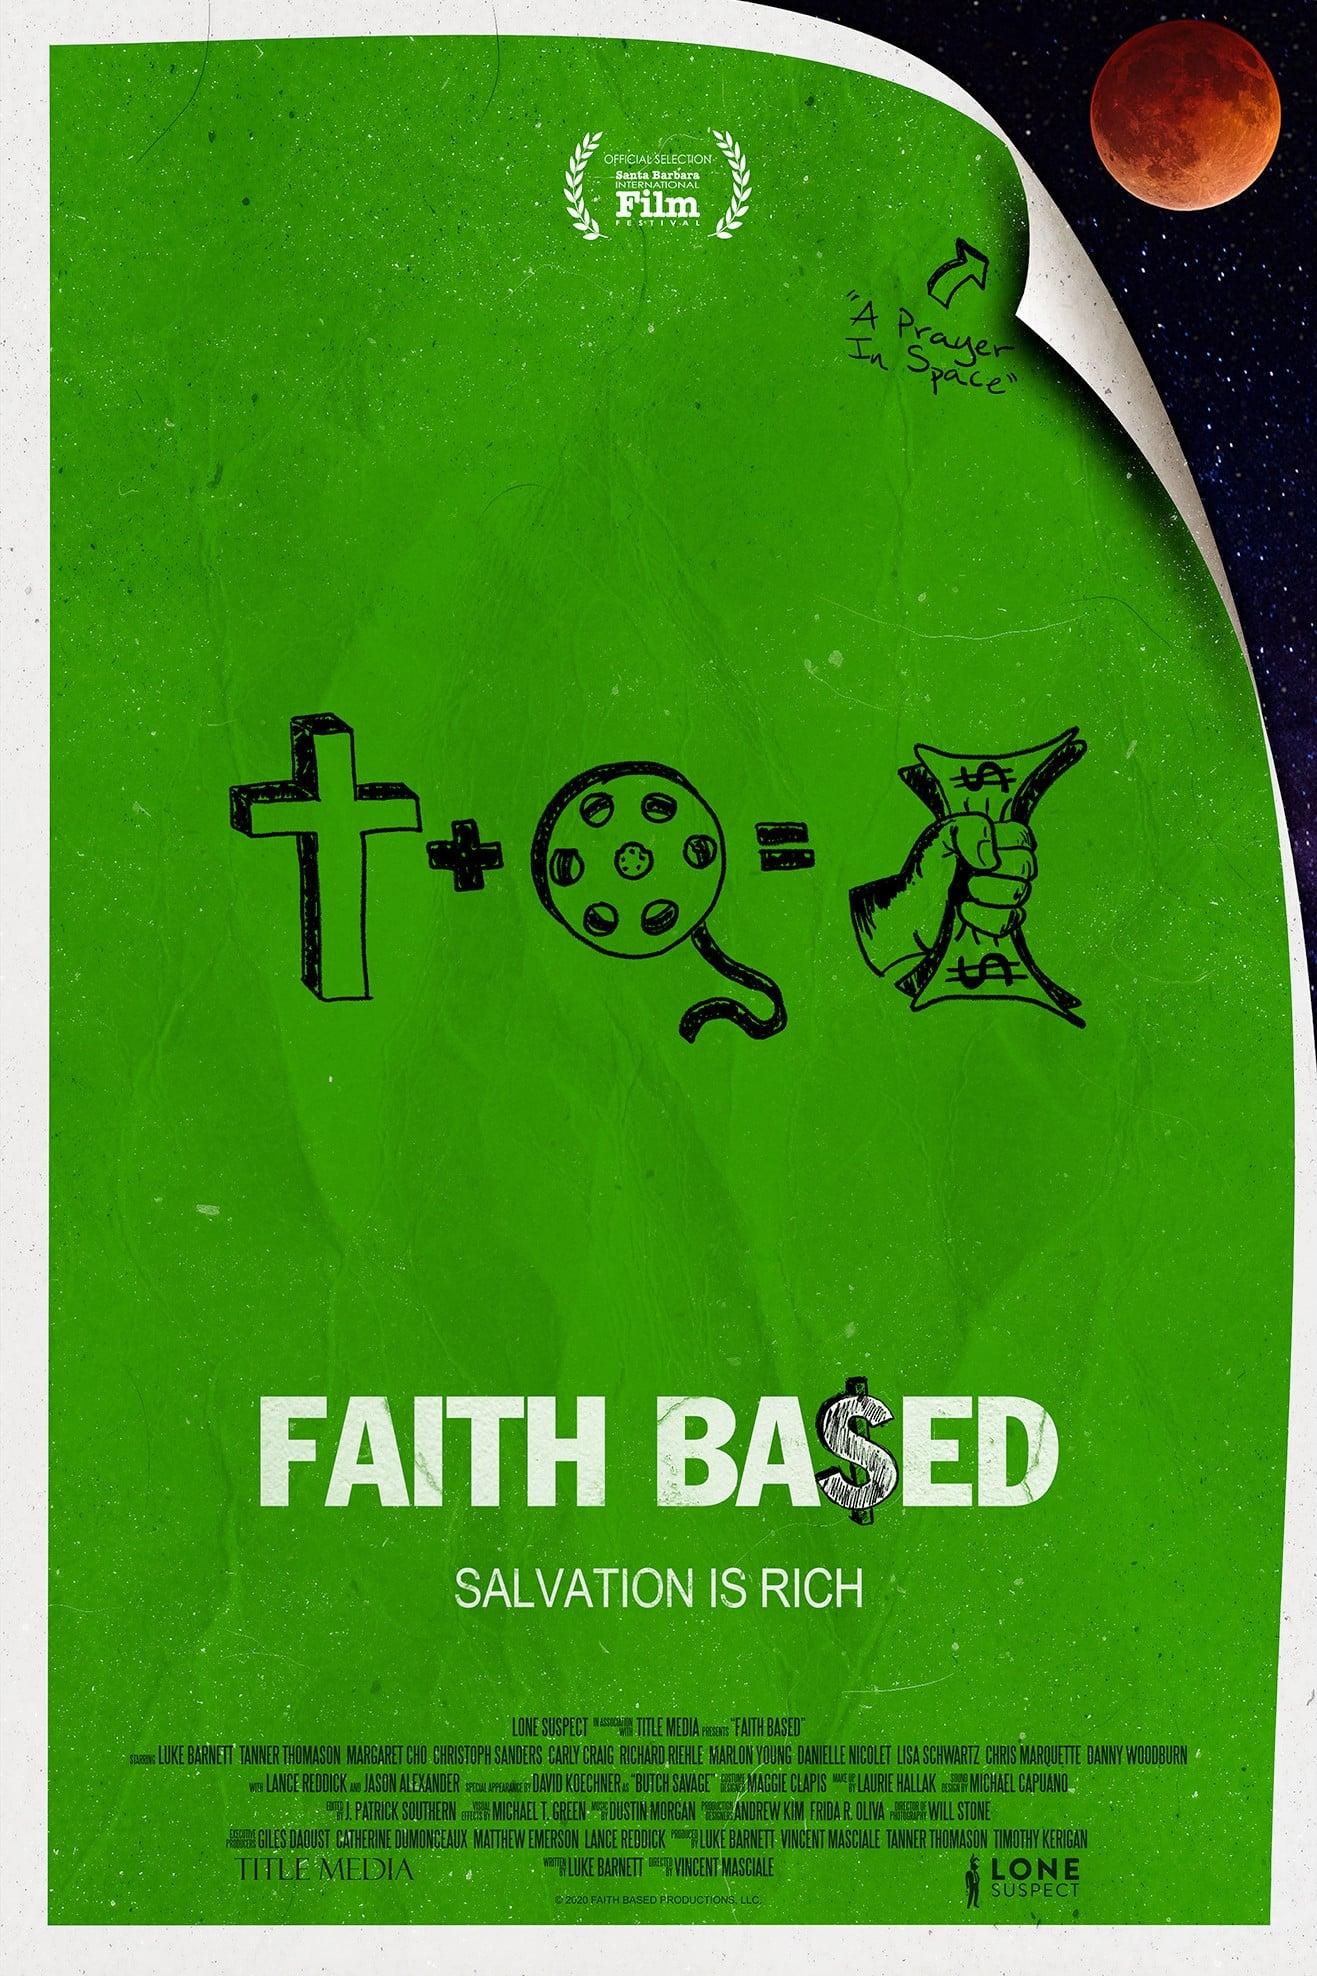 Faith Based poster